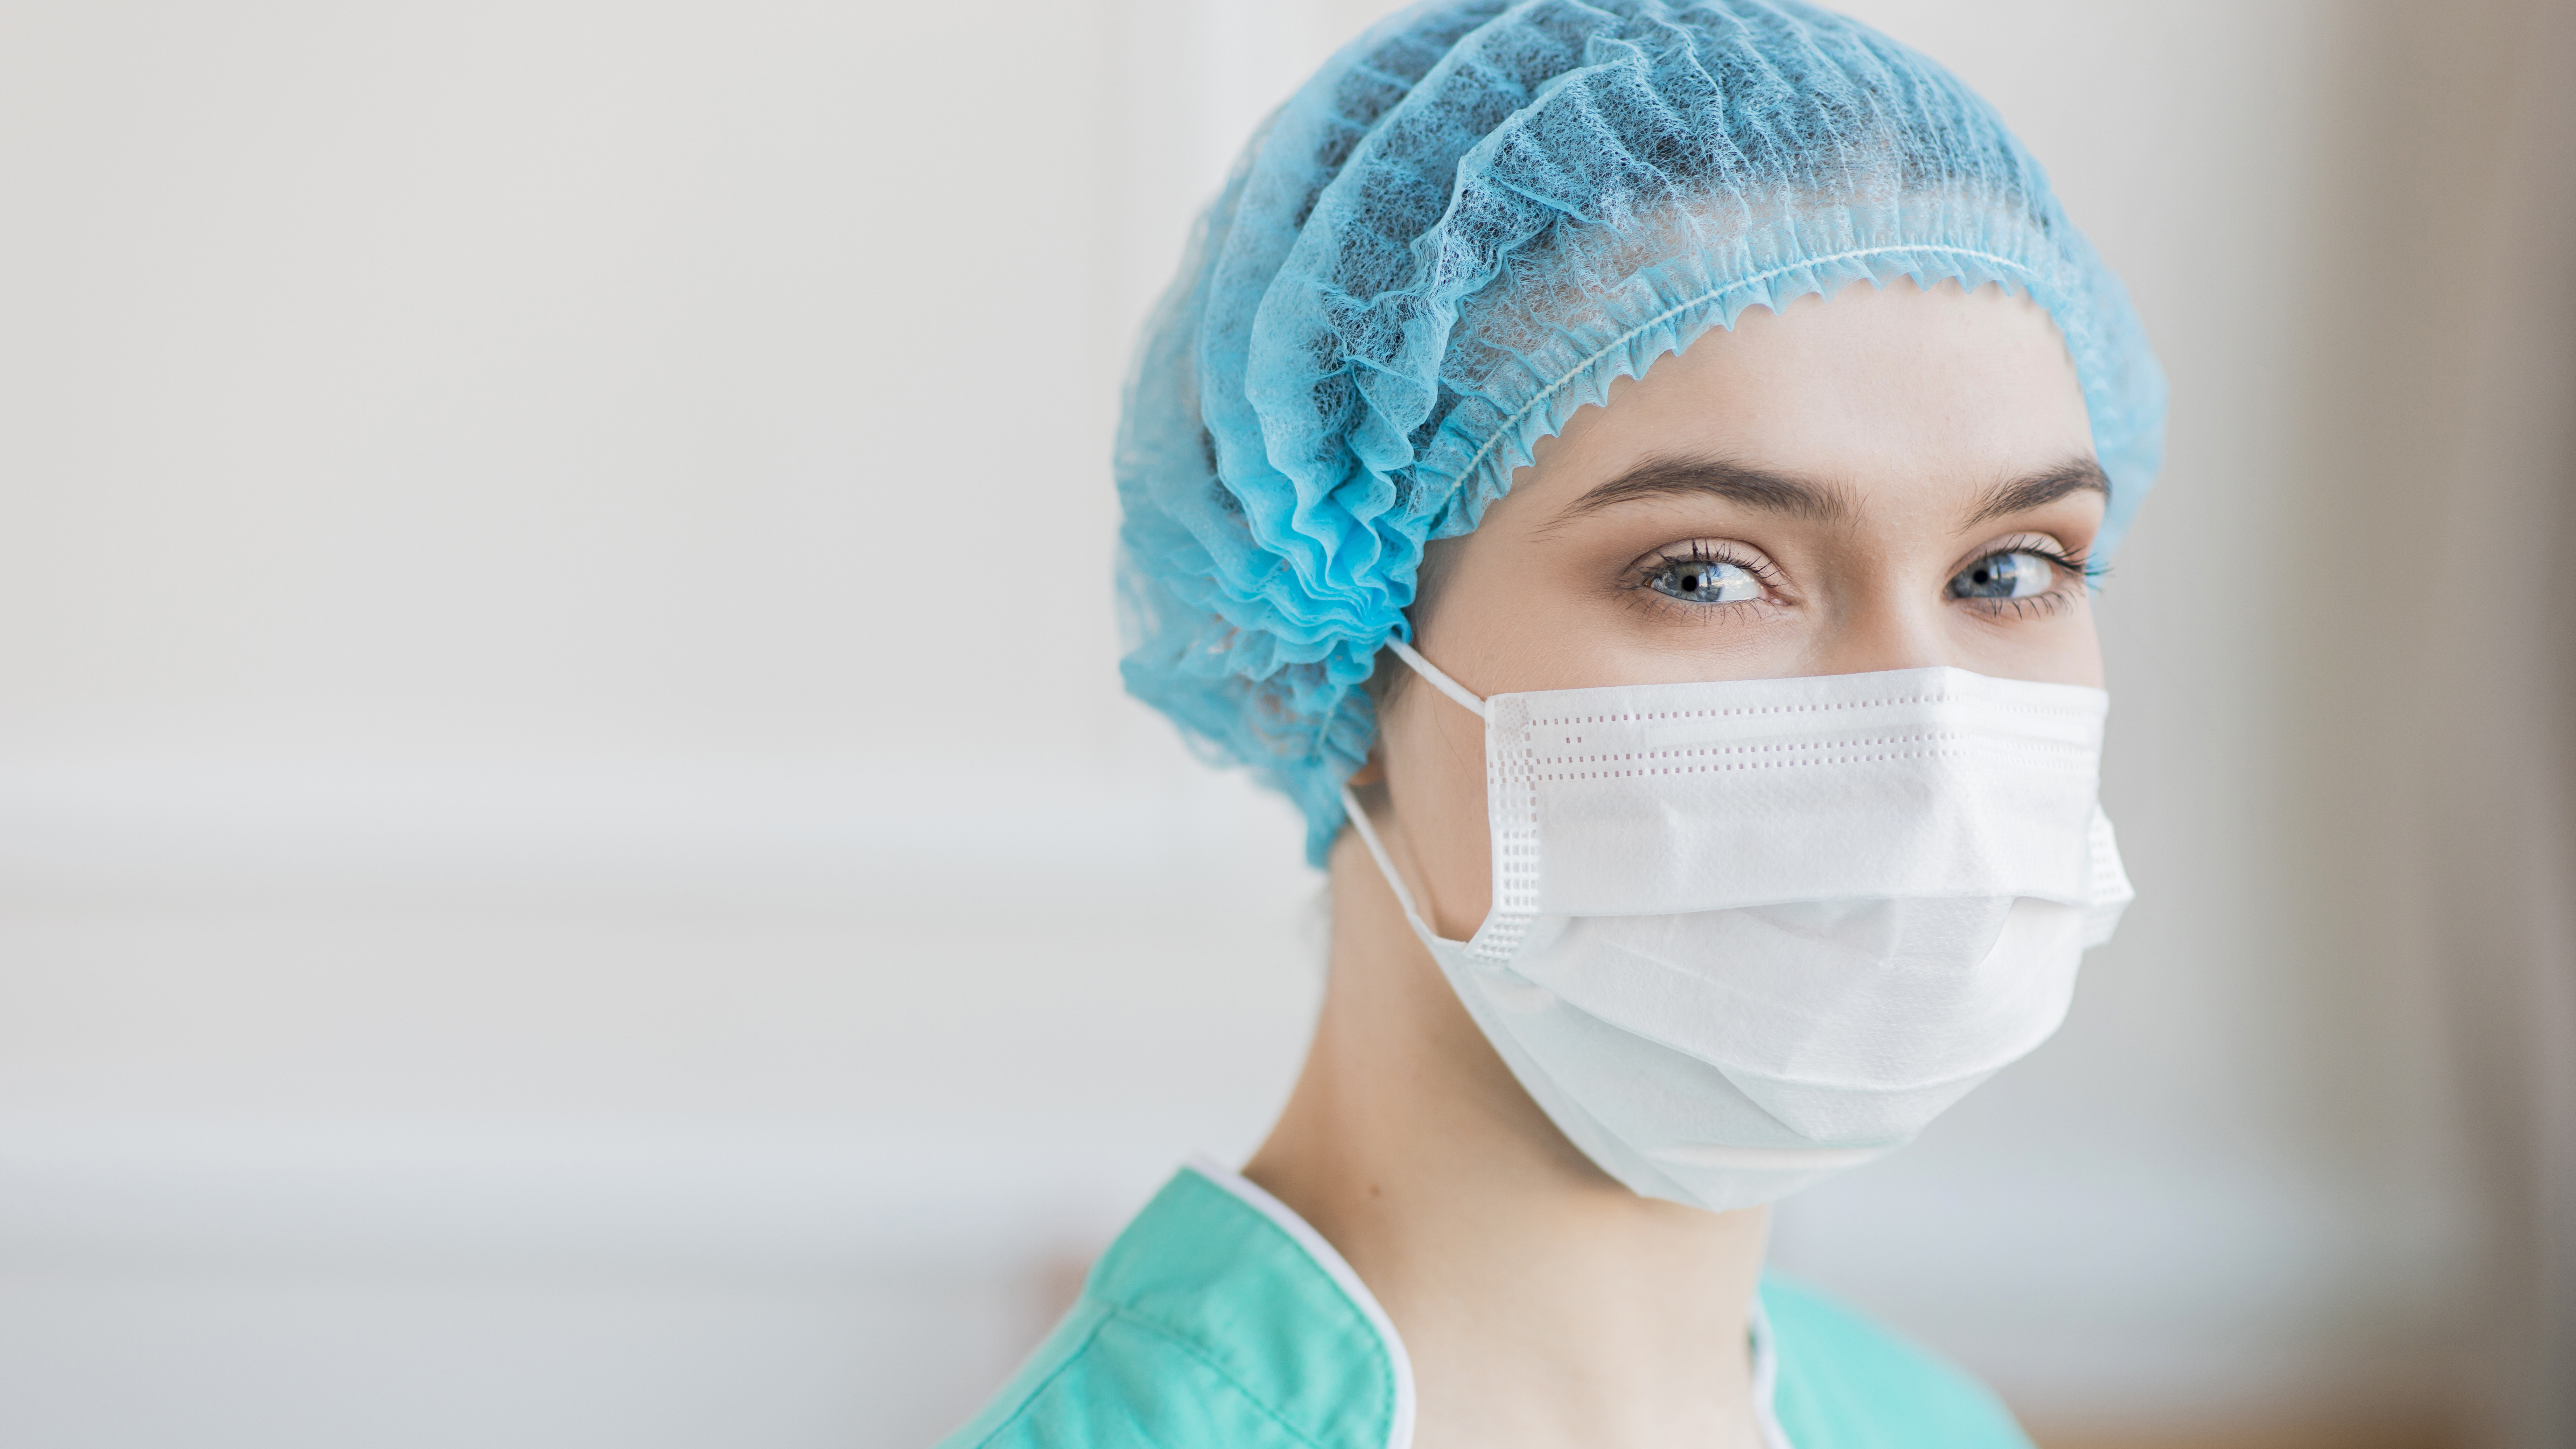 Медсестры очень красивые в медицинских масках фото